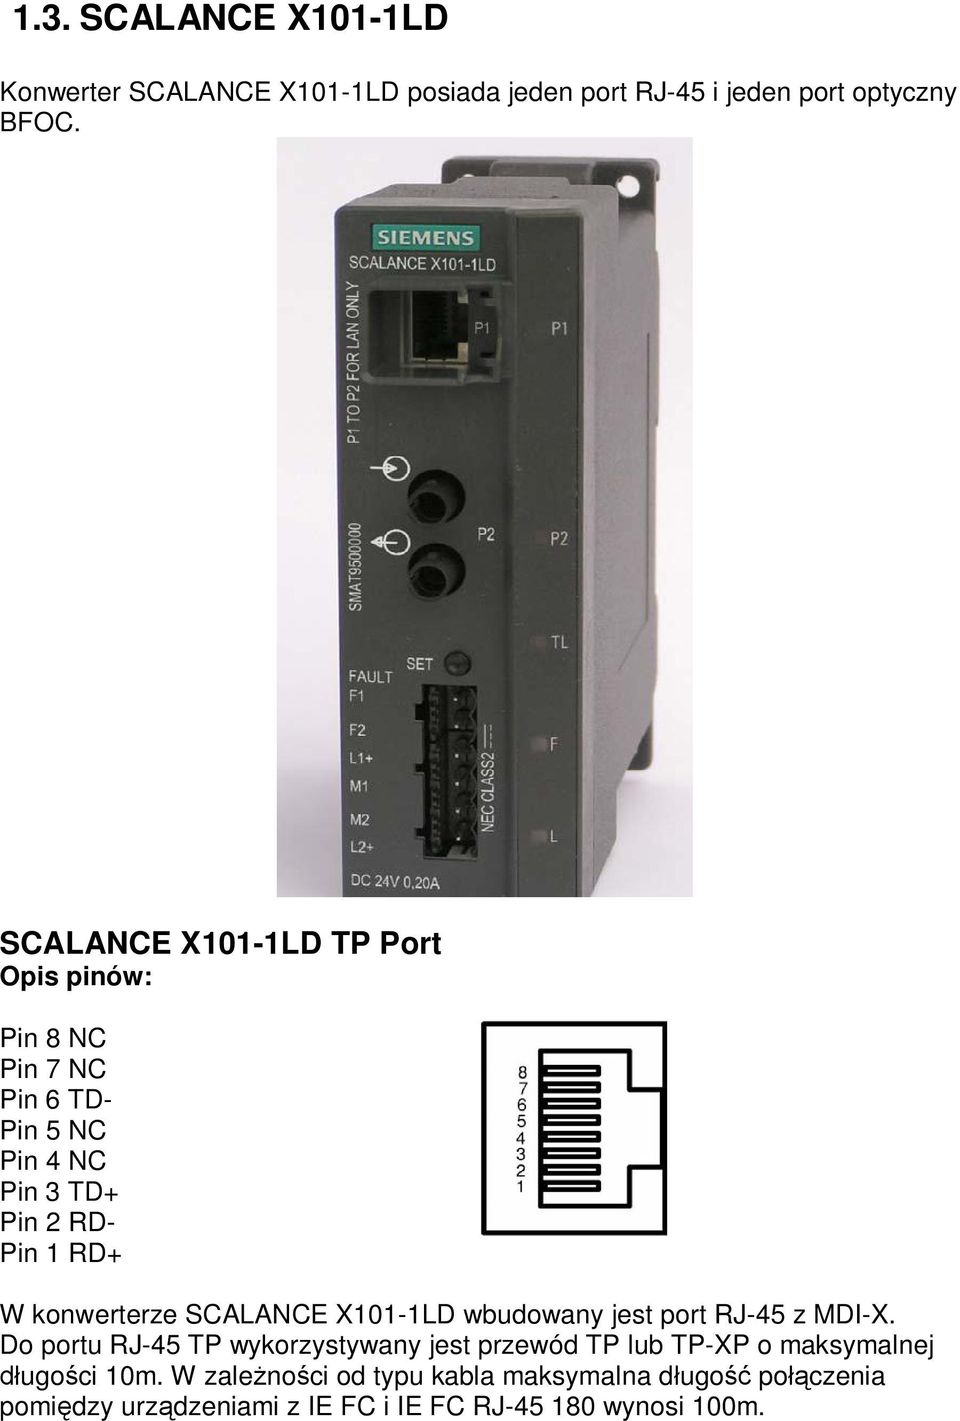 SCALANCE X101-1LD wbudowany jest port RJ-45 z MDI-X.